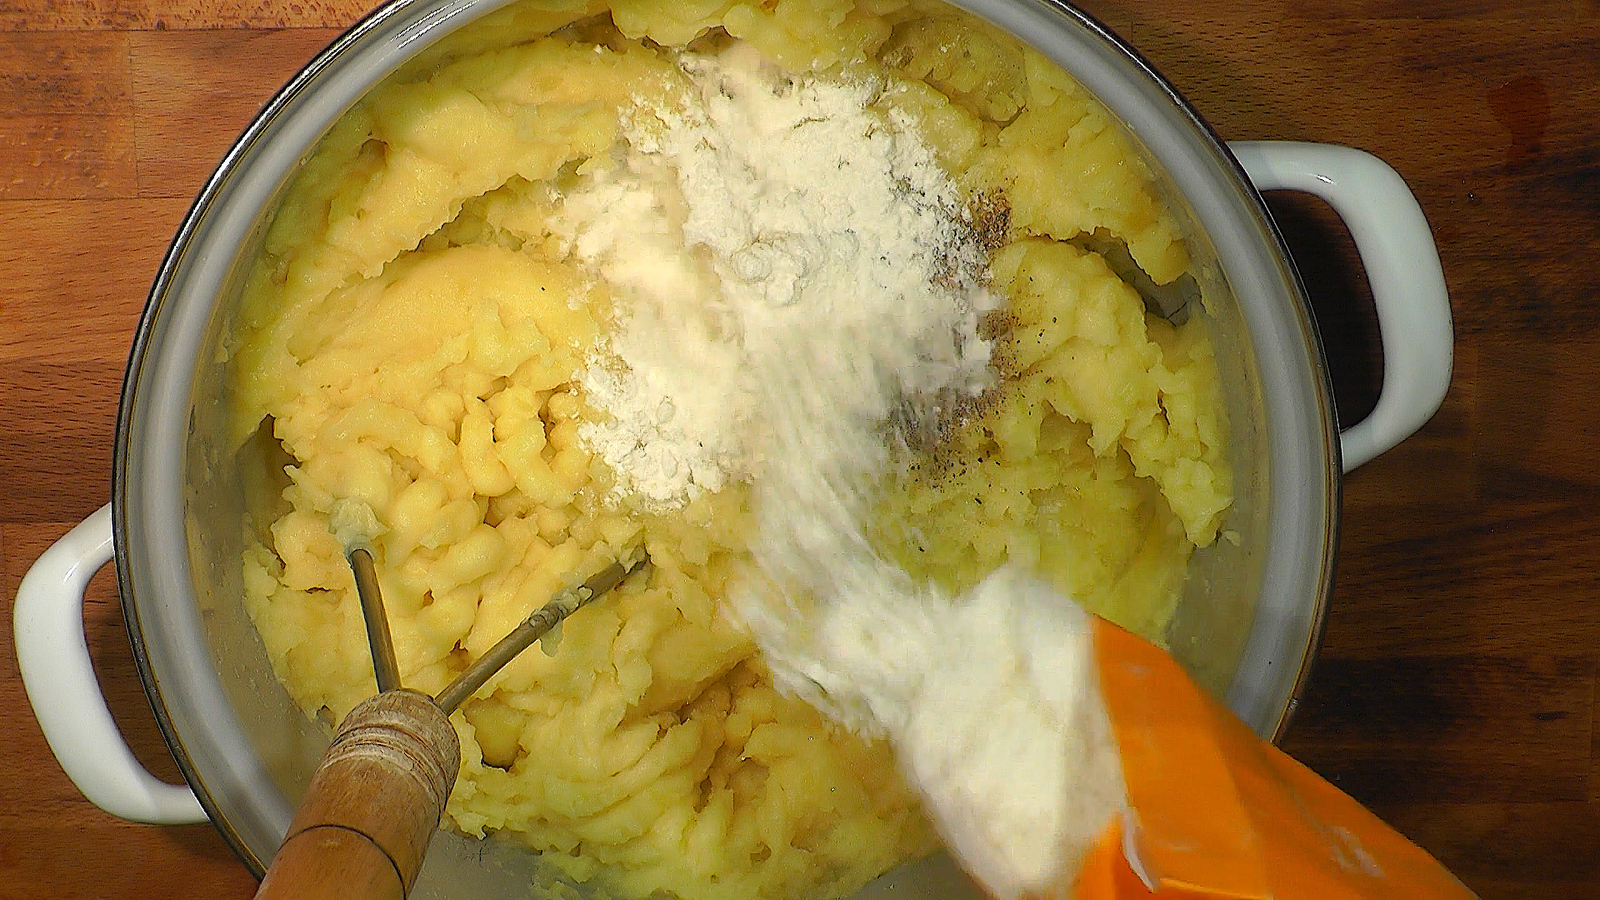 Делать тесто с картошкой